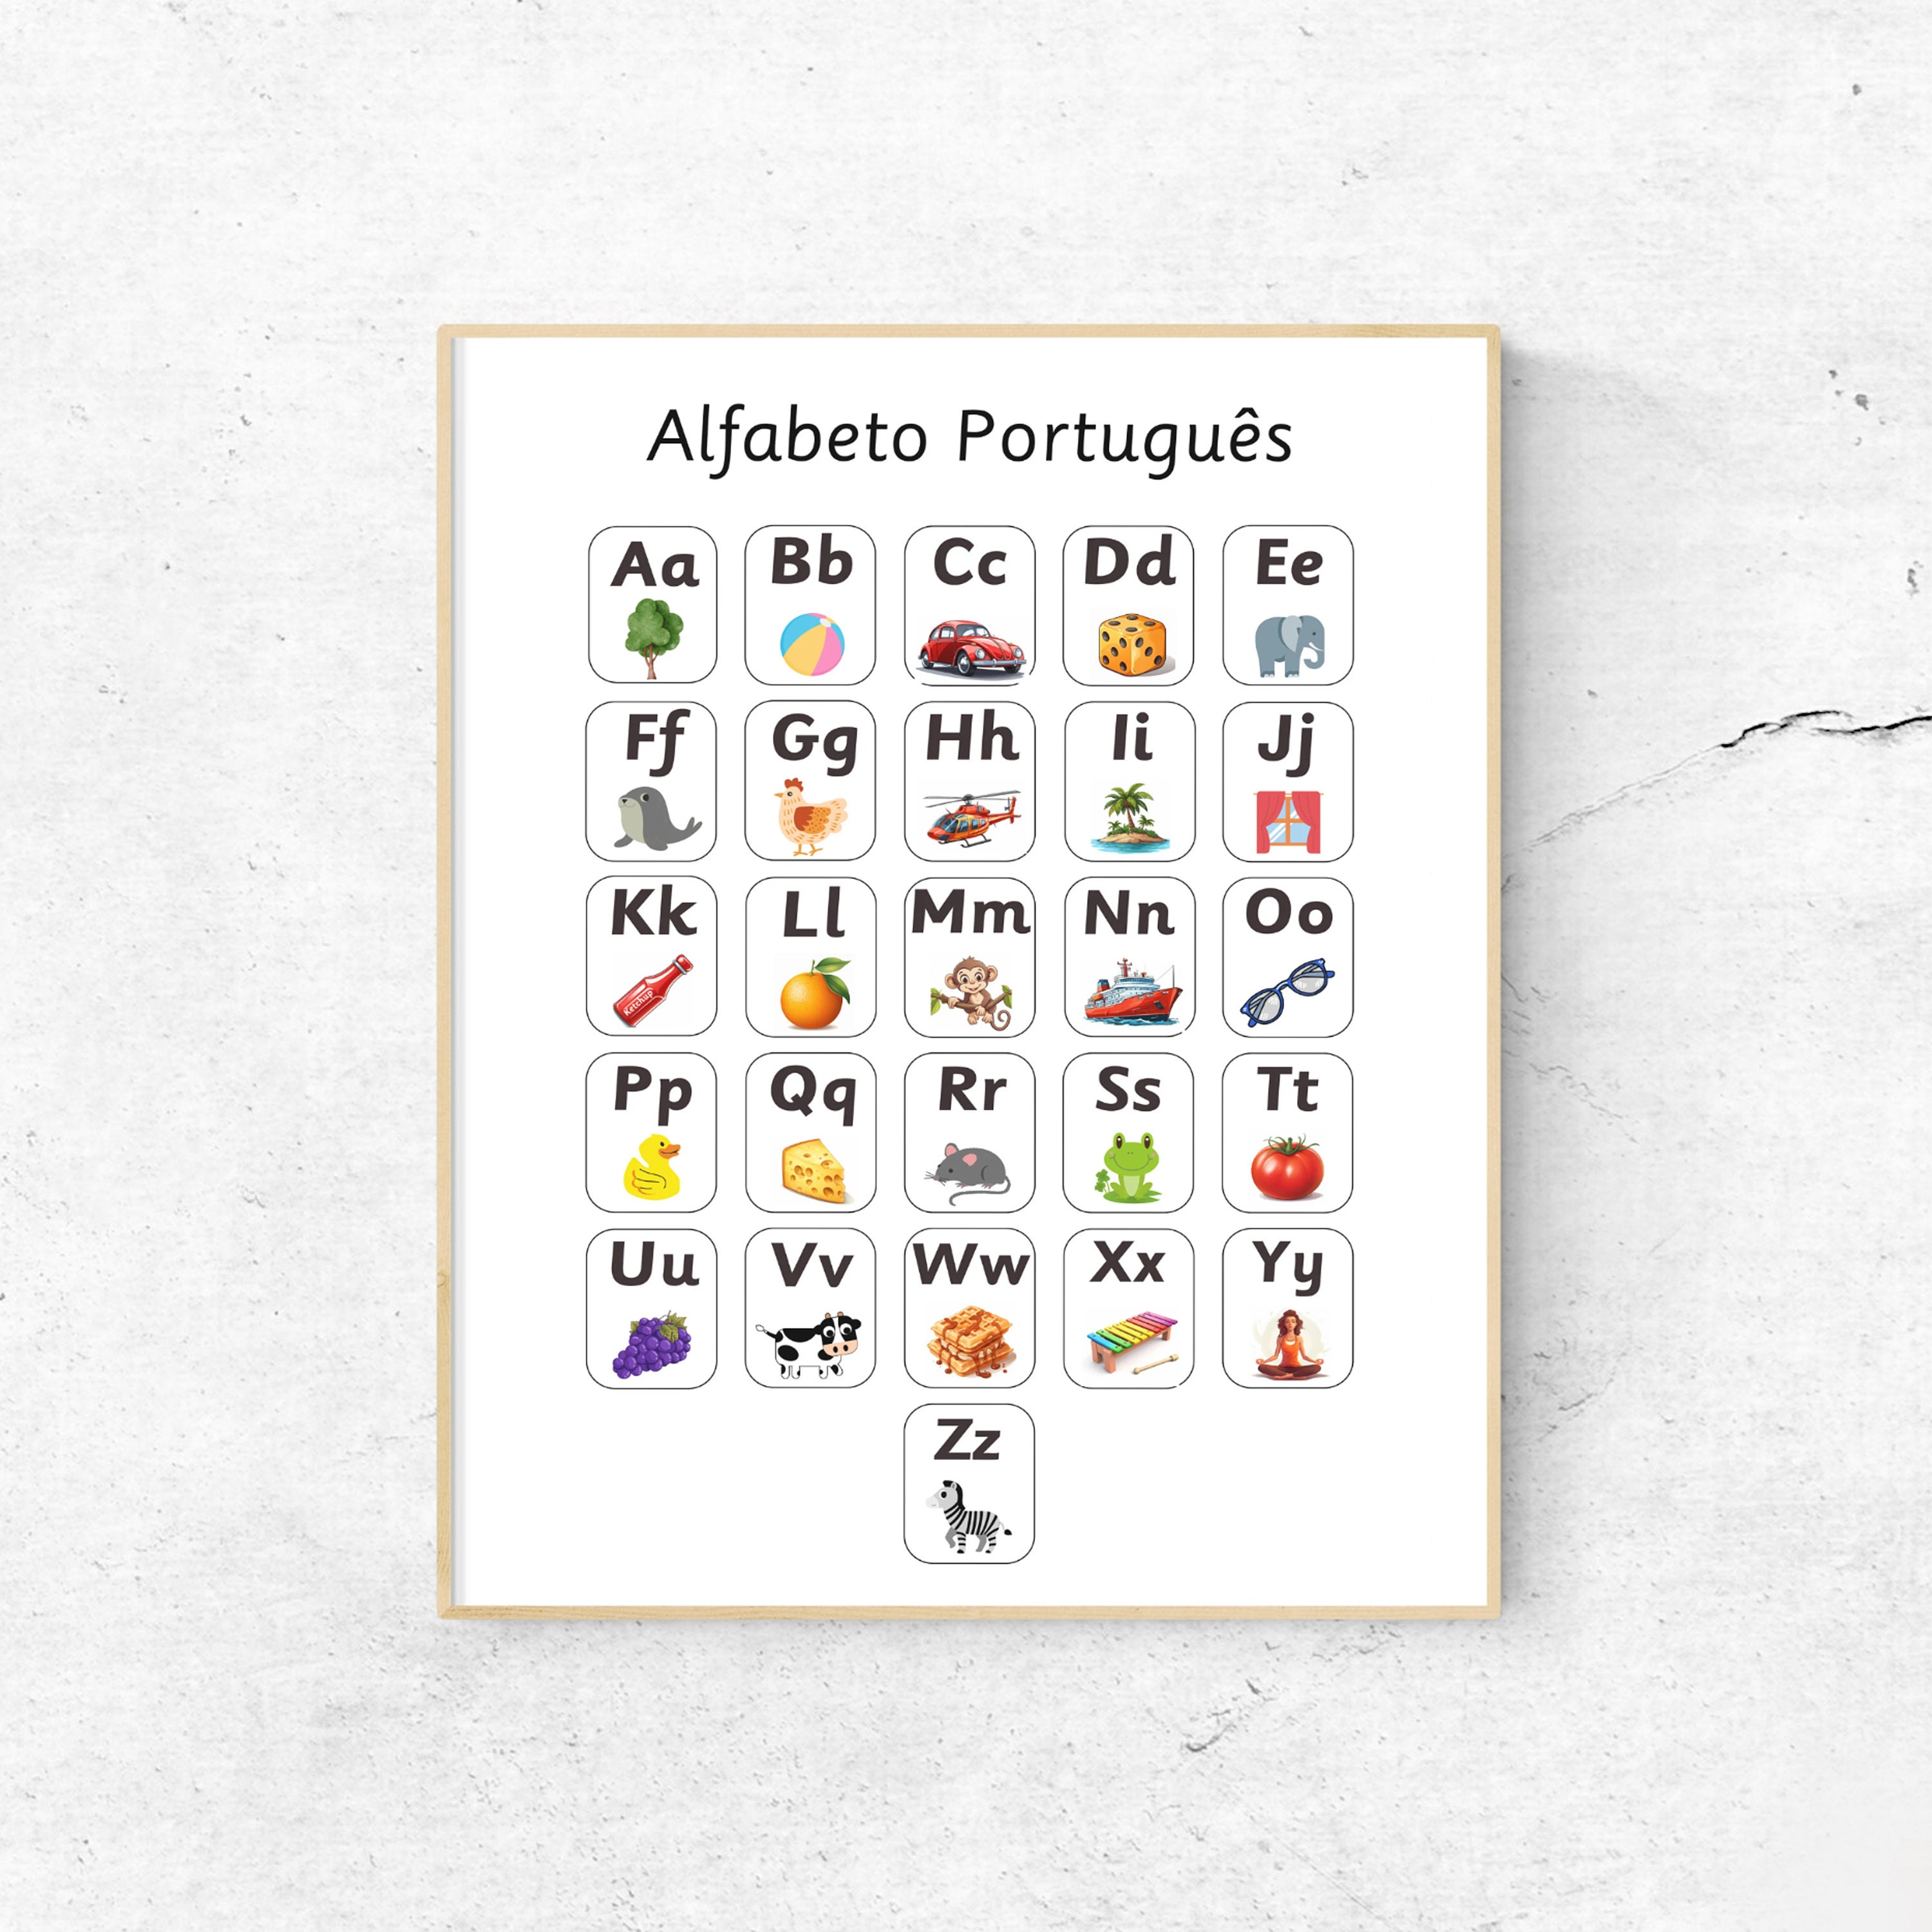 PORTUGUESE ALPHABET - Quizlet - Lisbon Language cafe